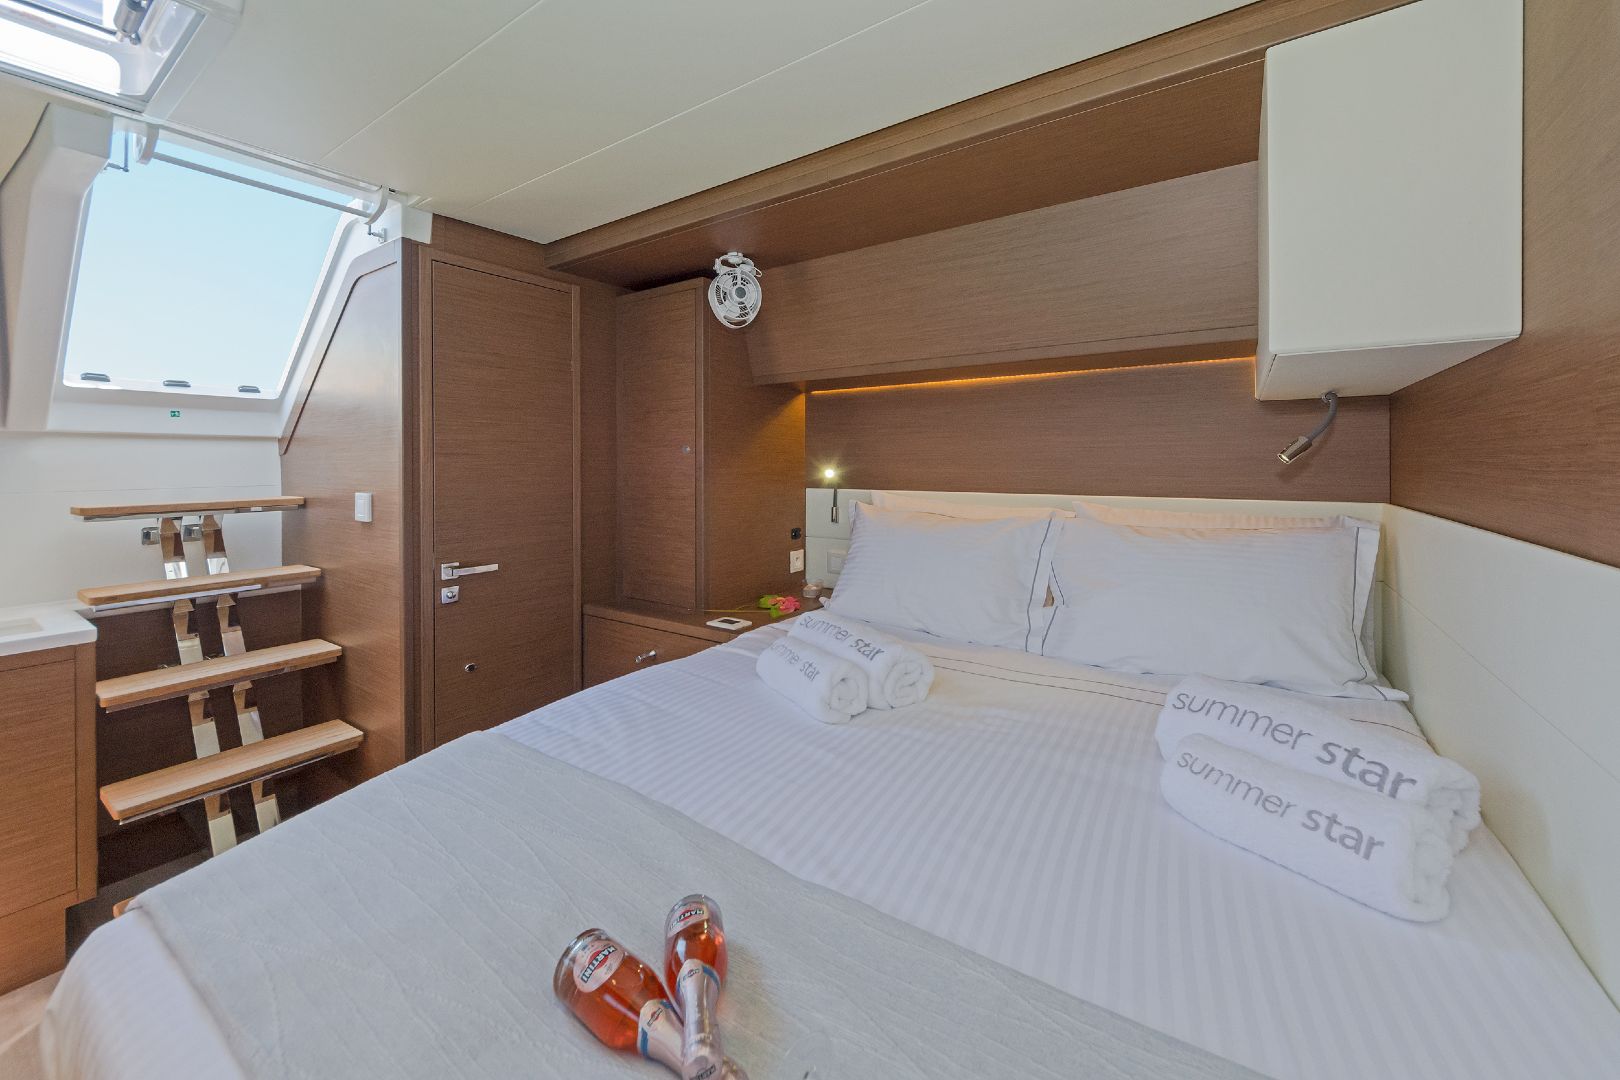 catamaran-Summer-Star-bedroom-entrance